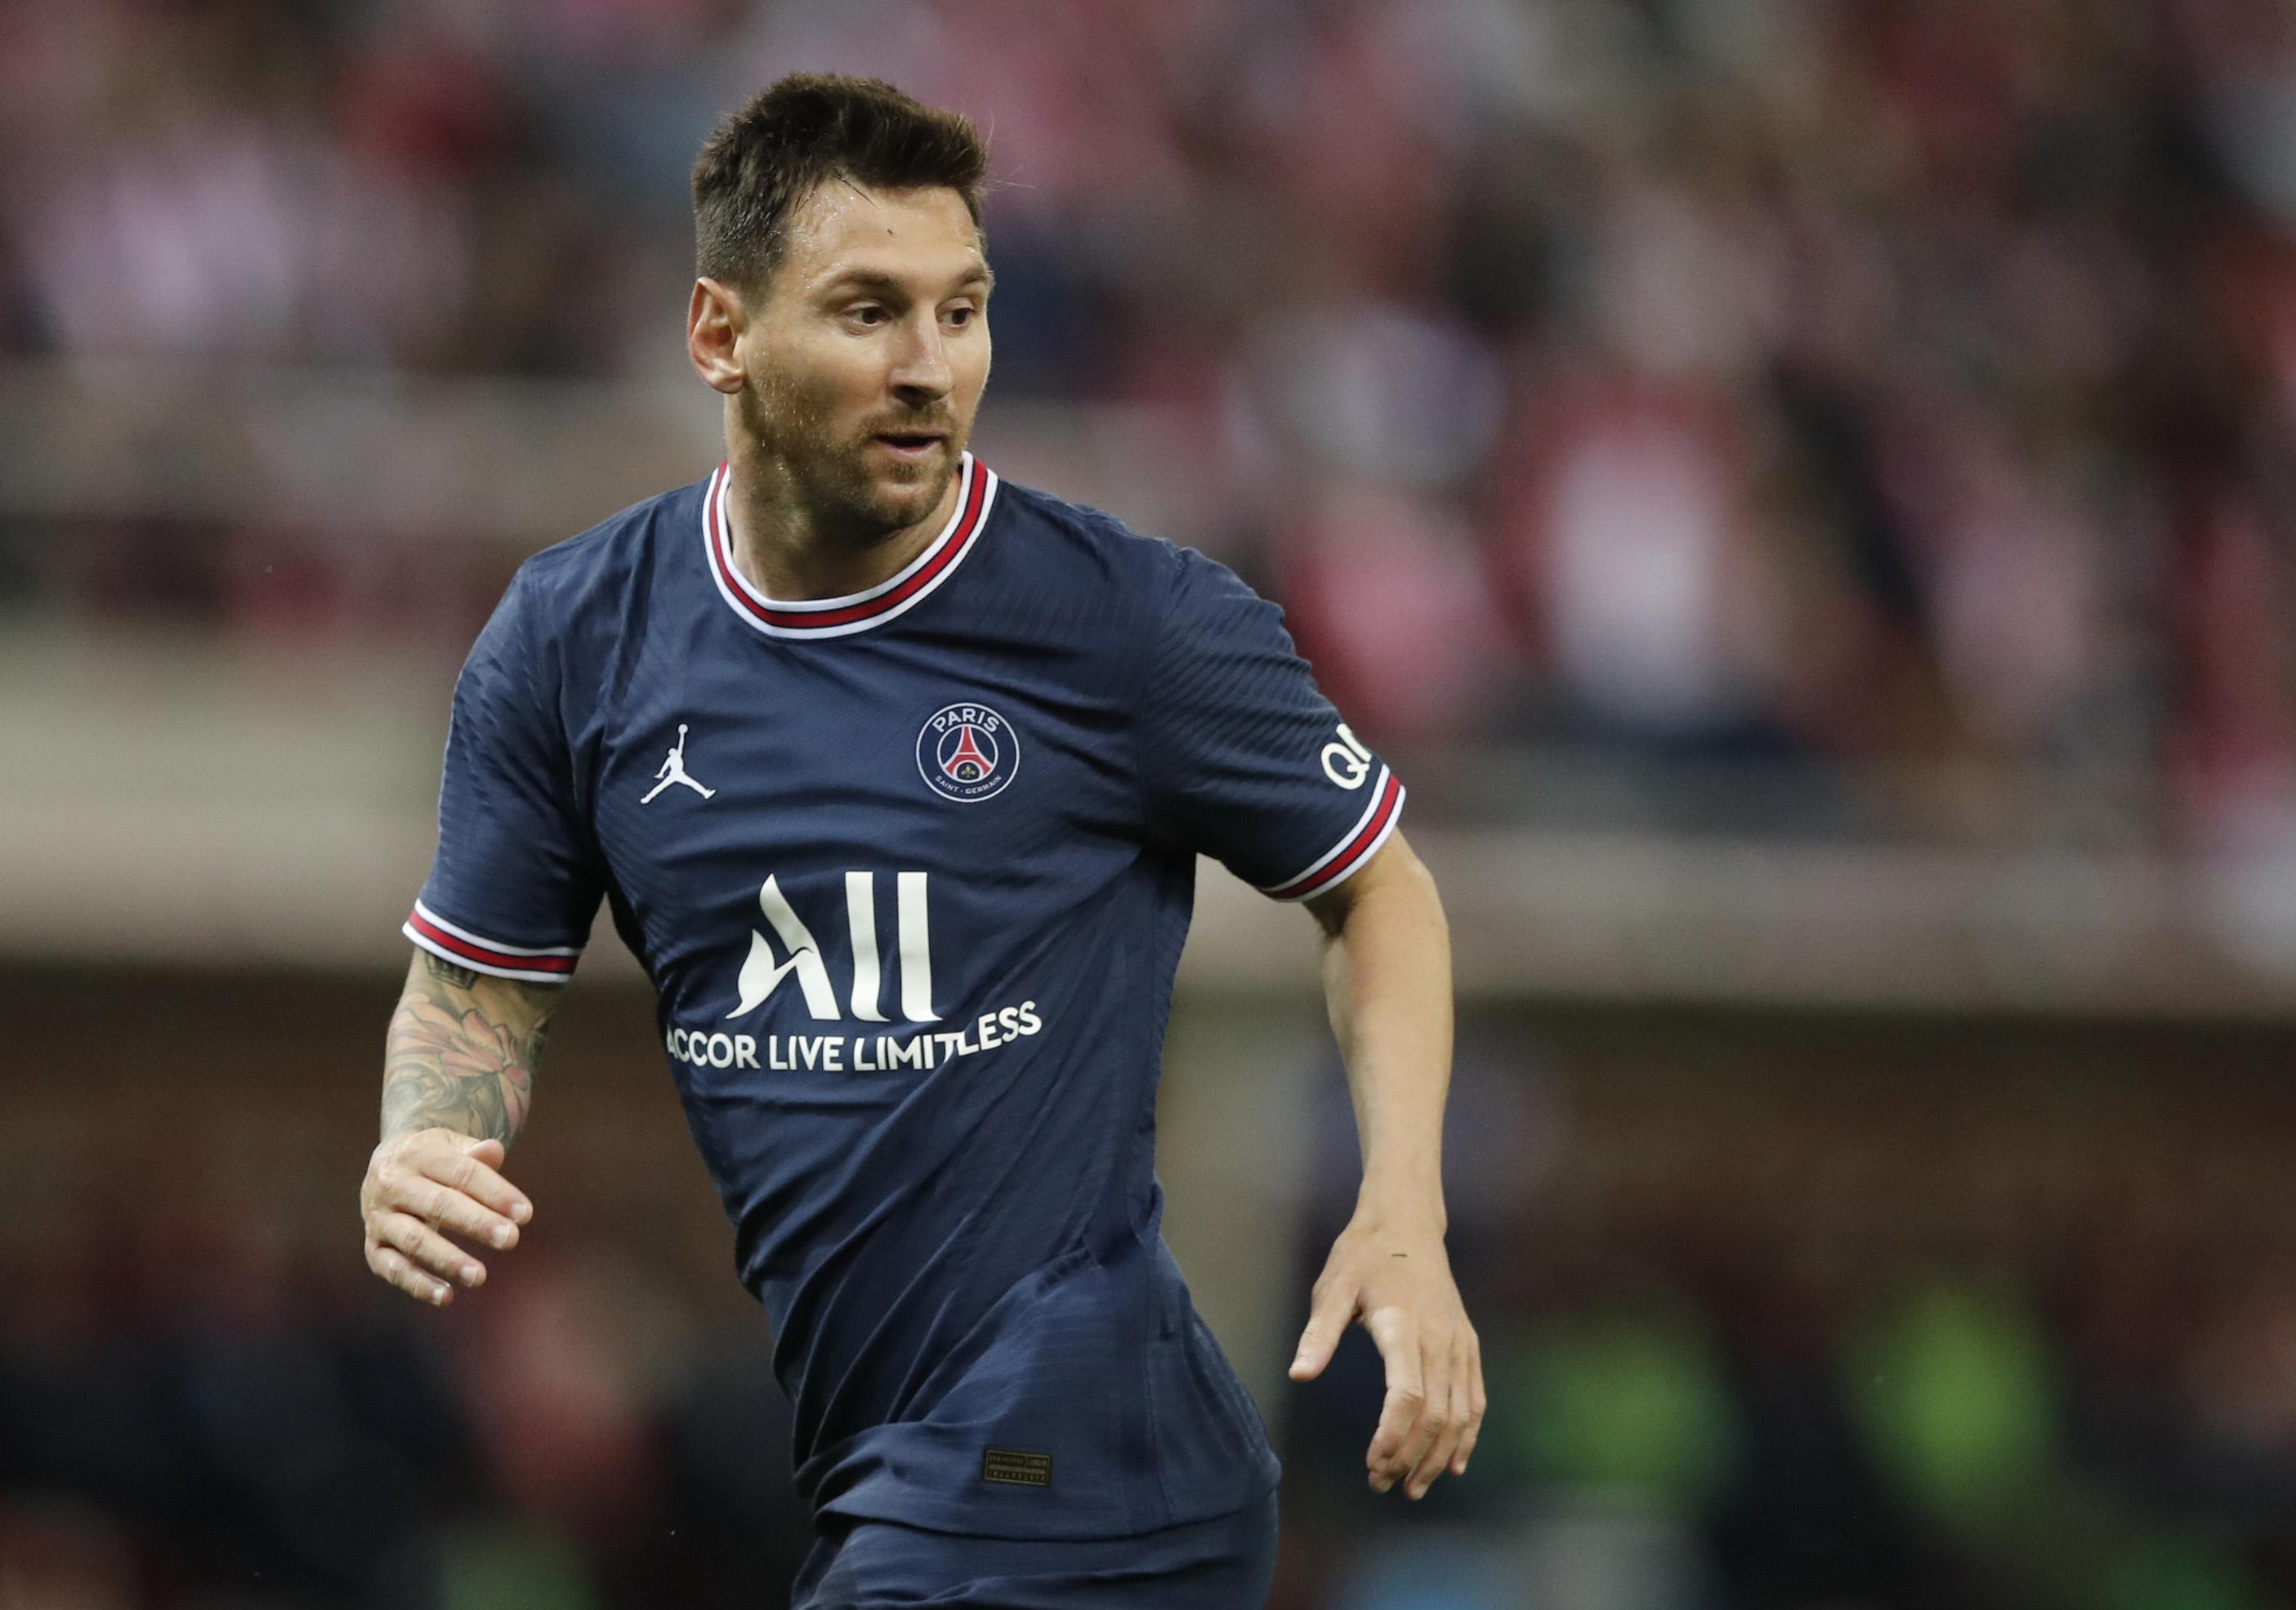 Messi PSG formasıyla ilk maçına çıktı ÖZET Reims - PSG maç sonucu: 0-2